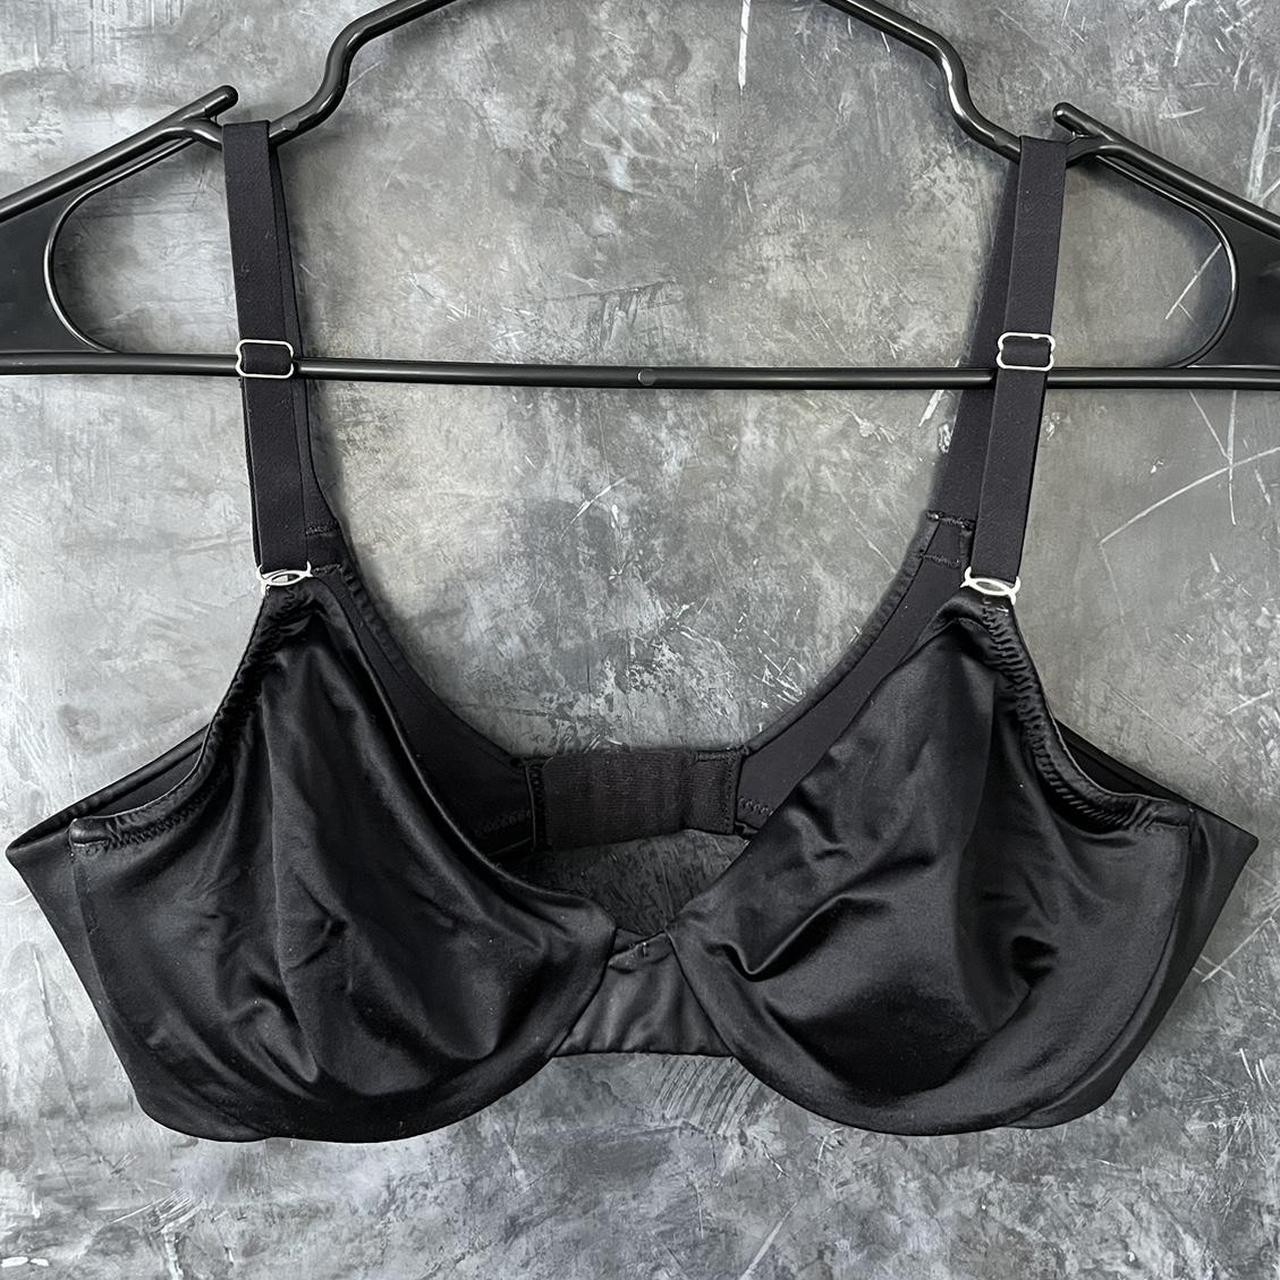 Repop black silky bra 34C Very comfortable on skin - Depop